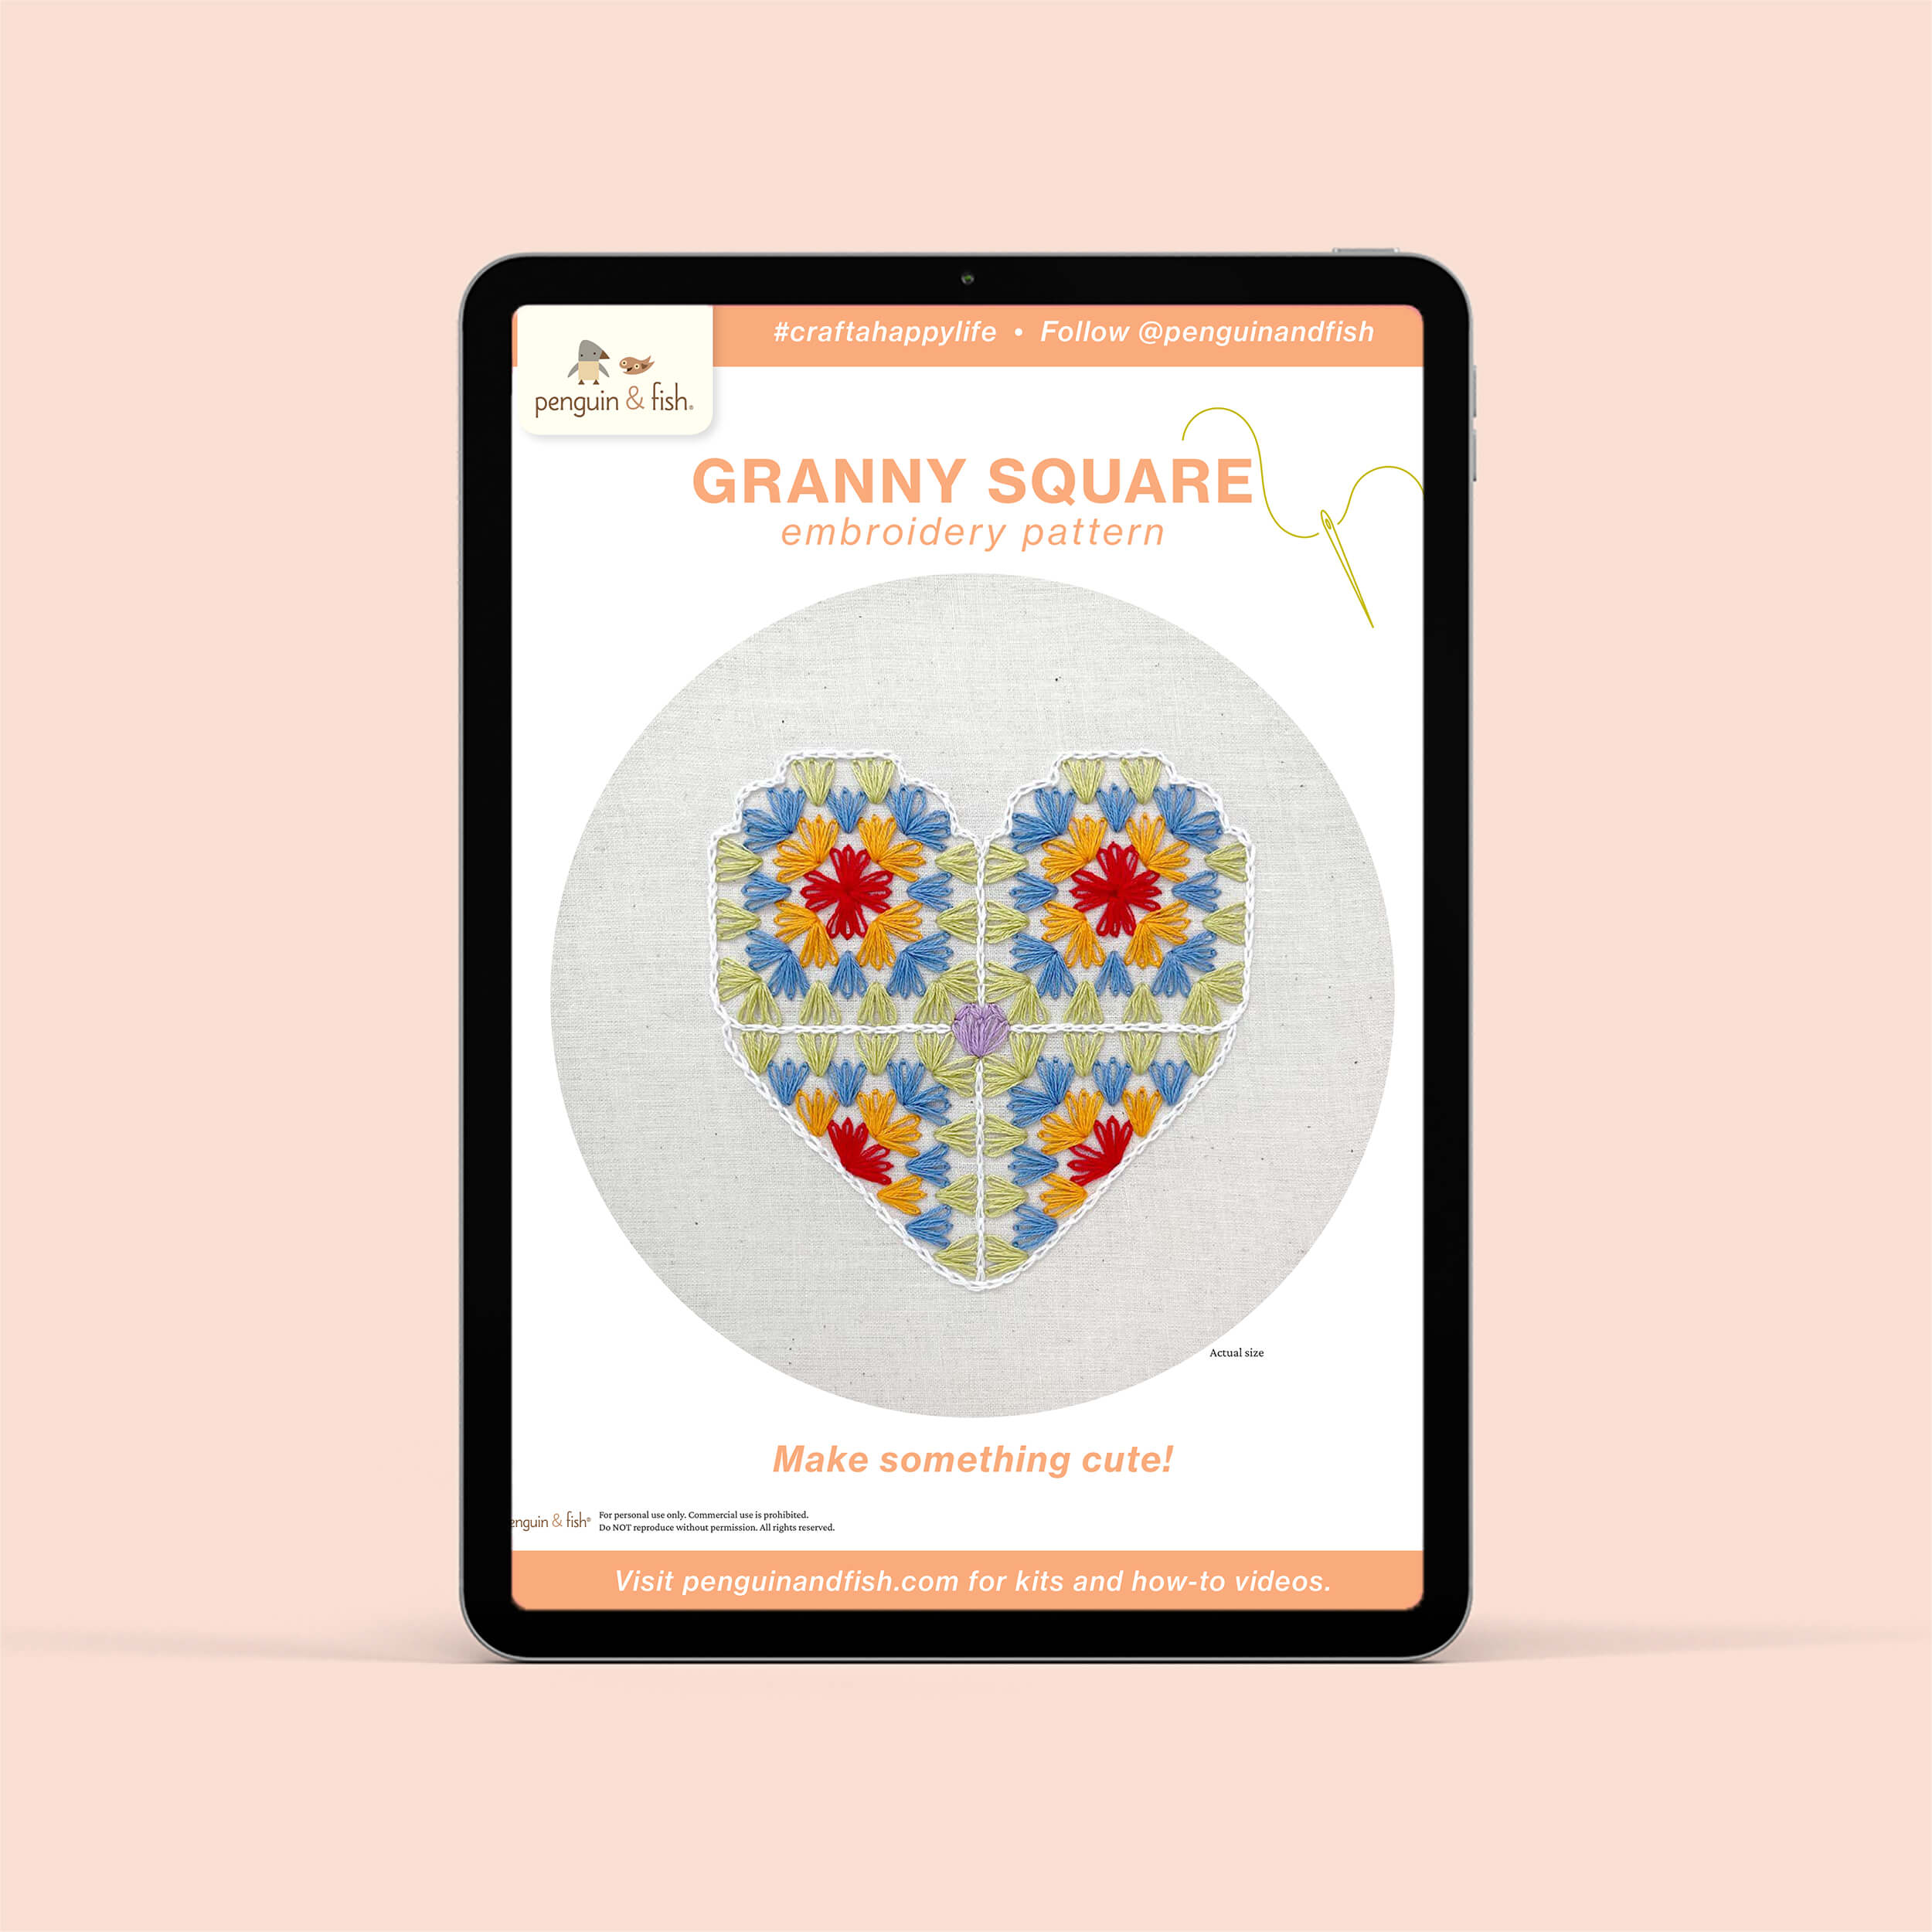 Granny Square PDF embroidery pattern